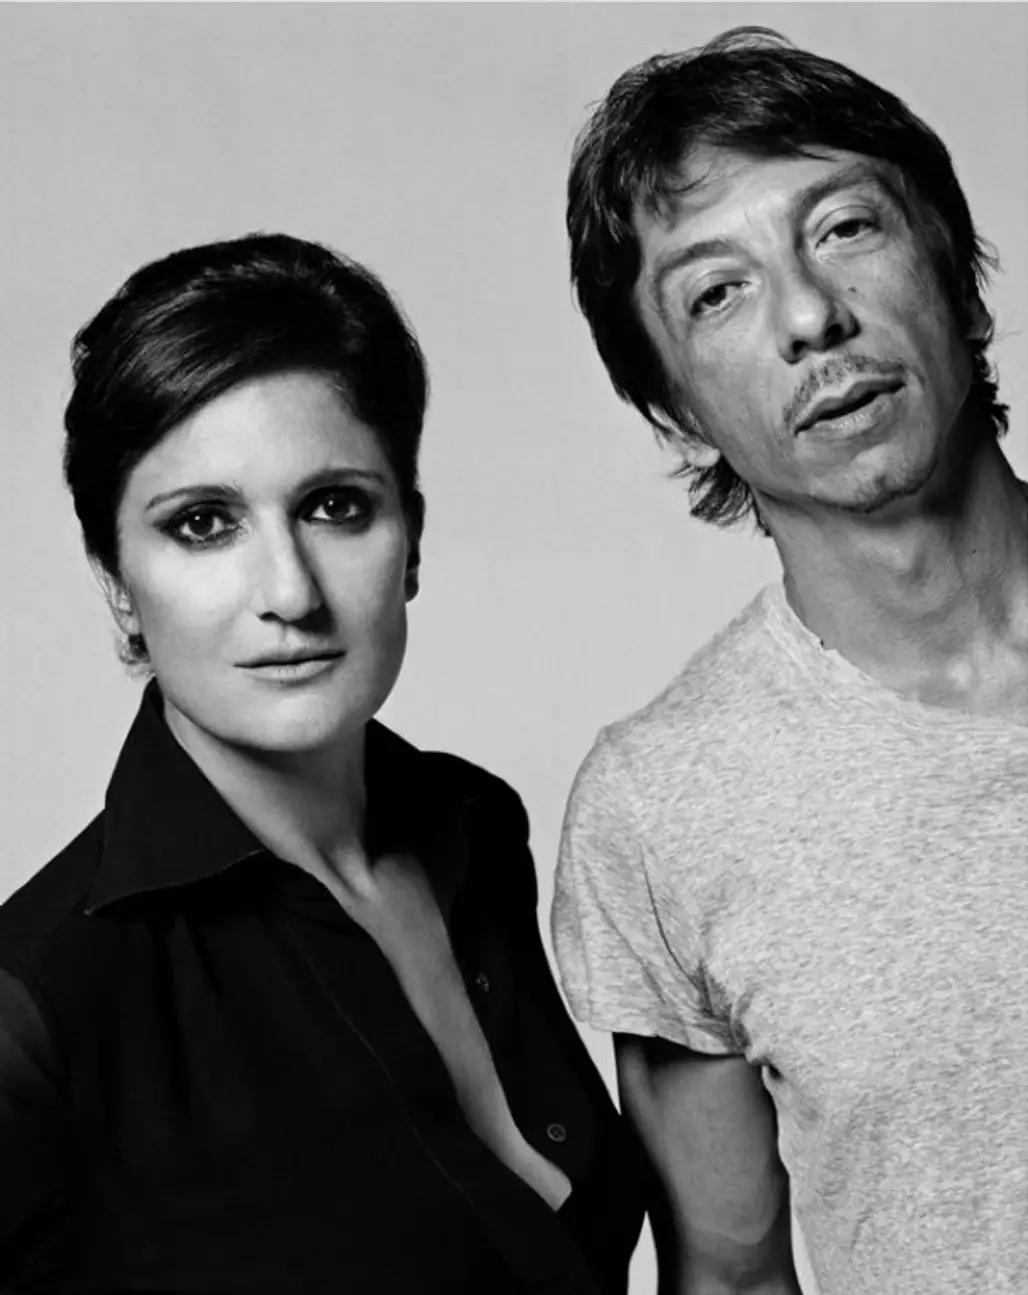 International Award – Maria Grazia Chiuri and Pierpaolo Piccioli for Valentino